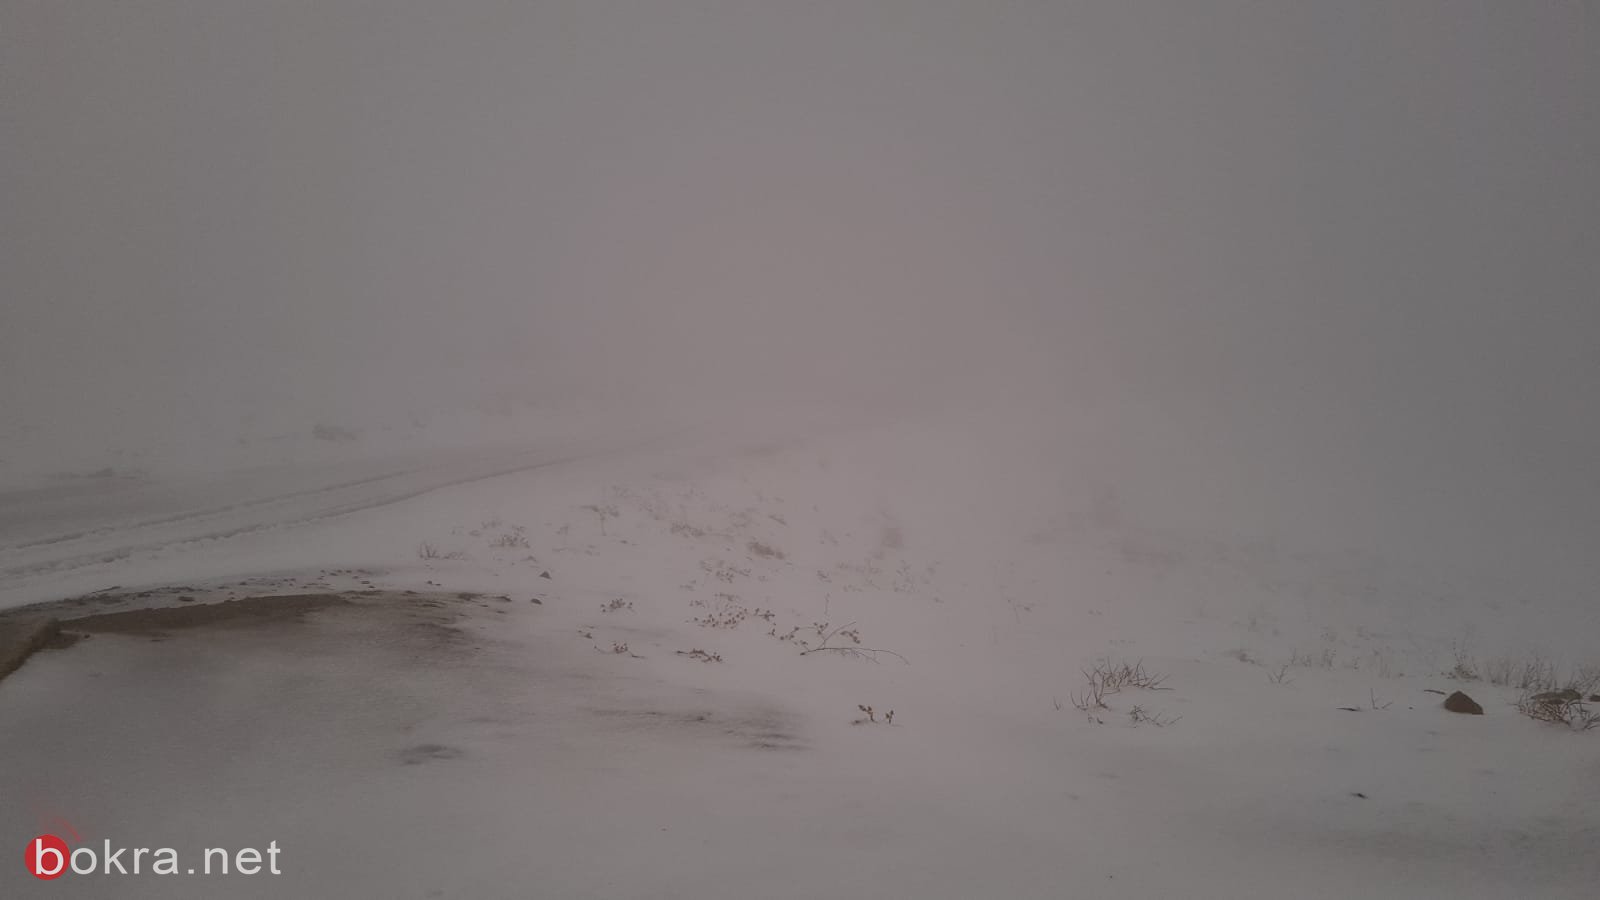 الثلوج تغطي جبل الشيخ .. وإليكم حالة الطقس المتوقعة للساعات والأيام القادمة-1